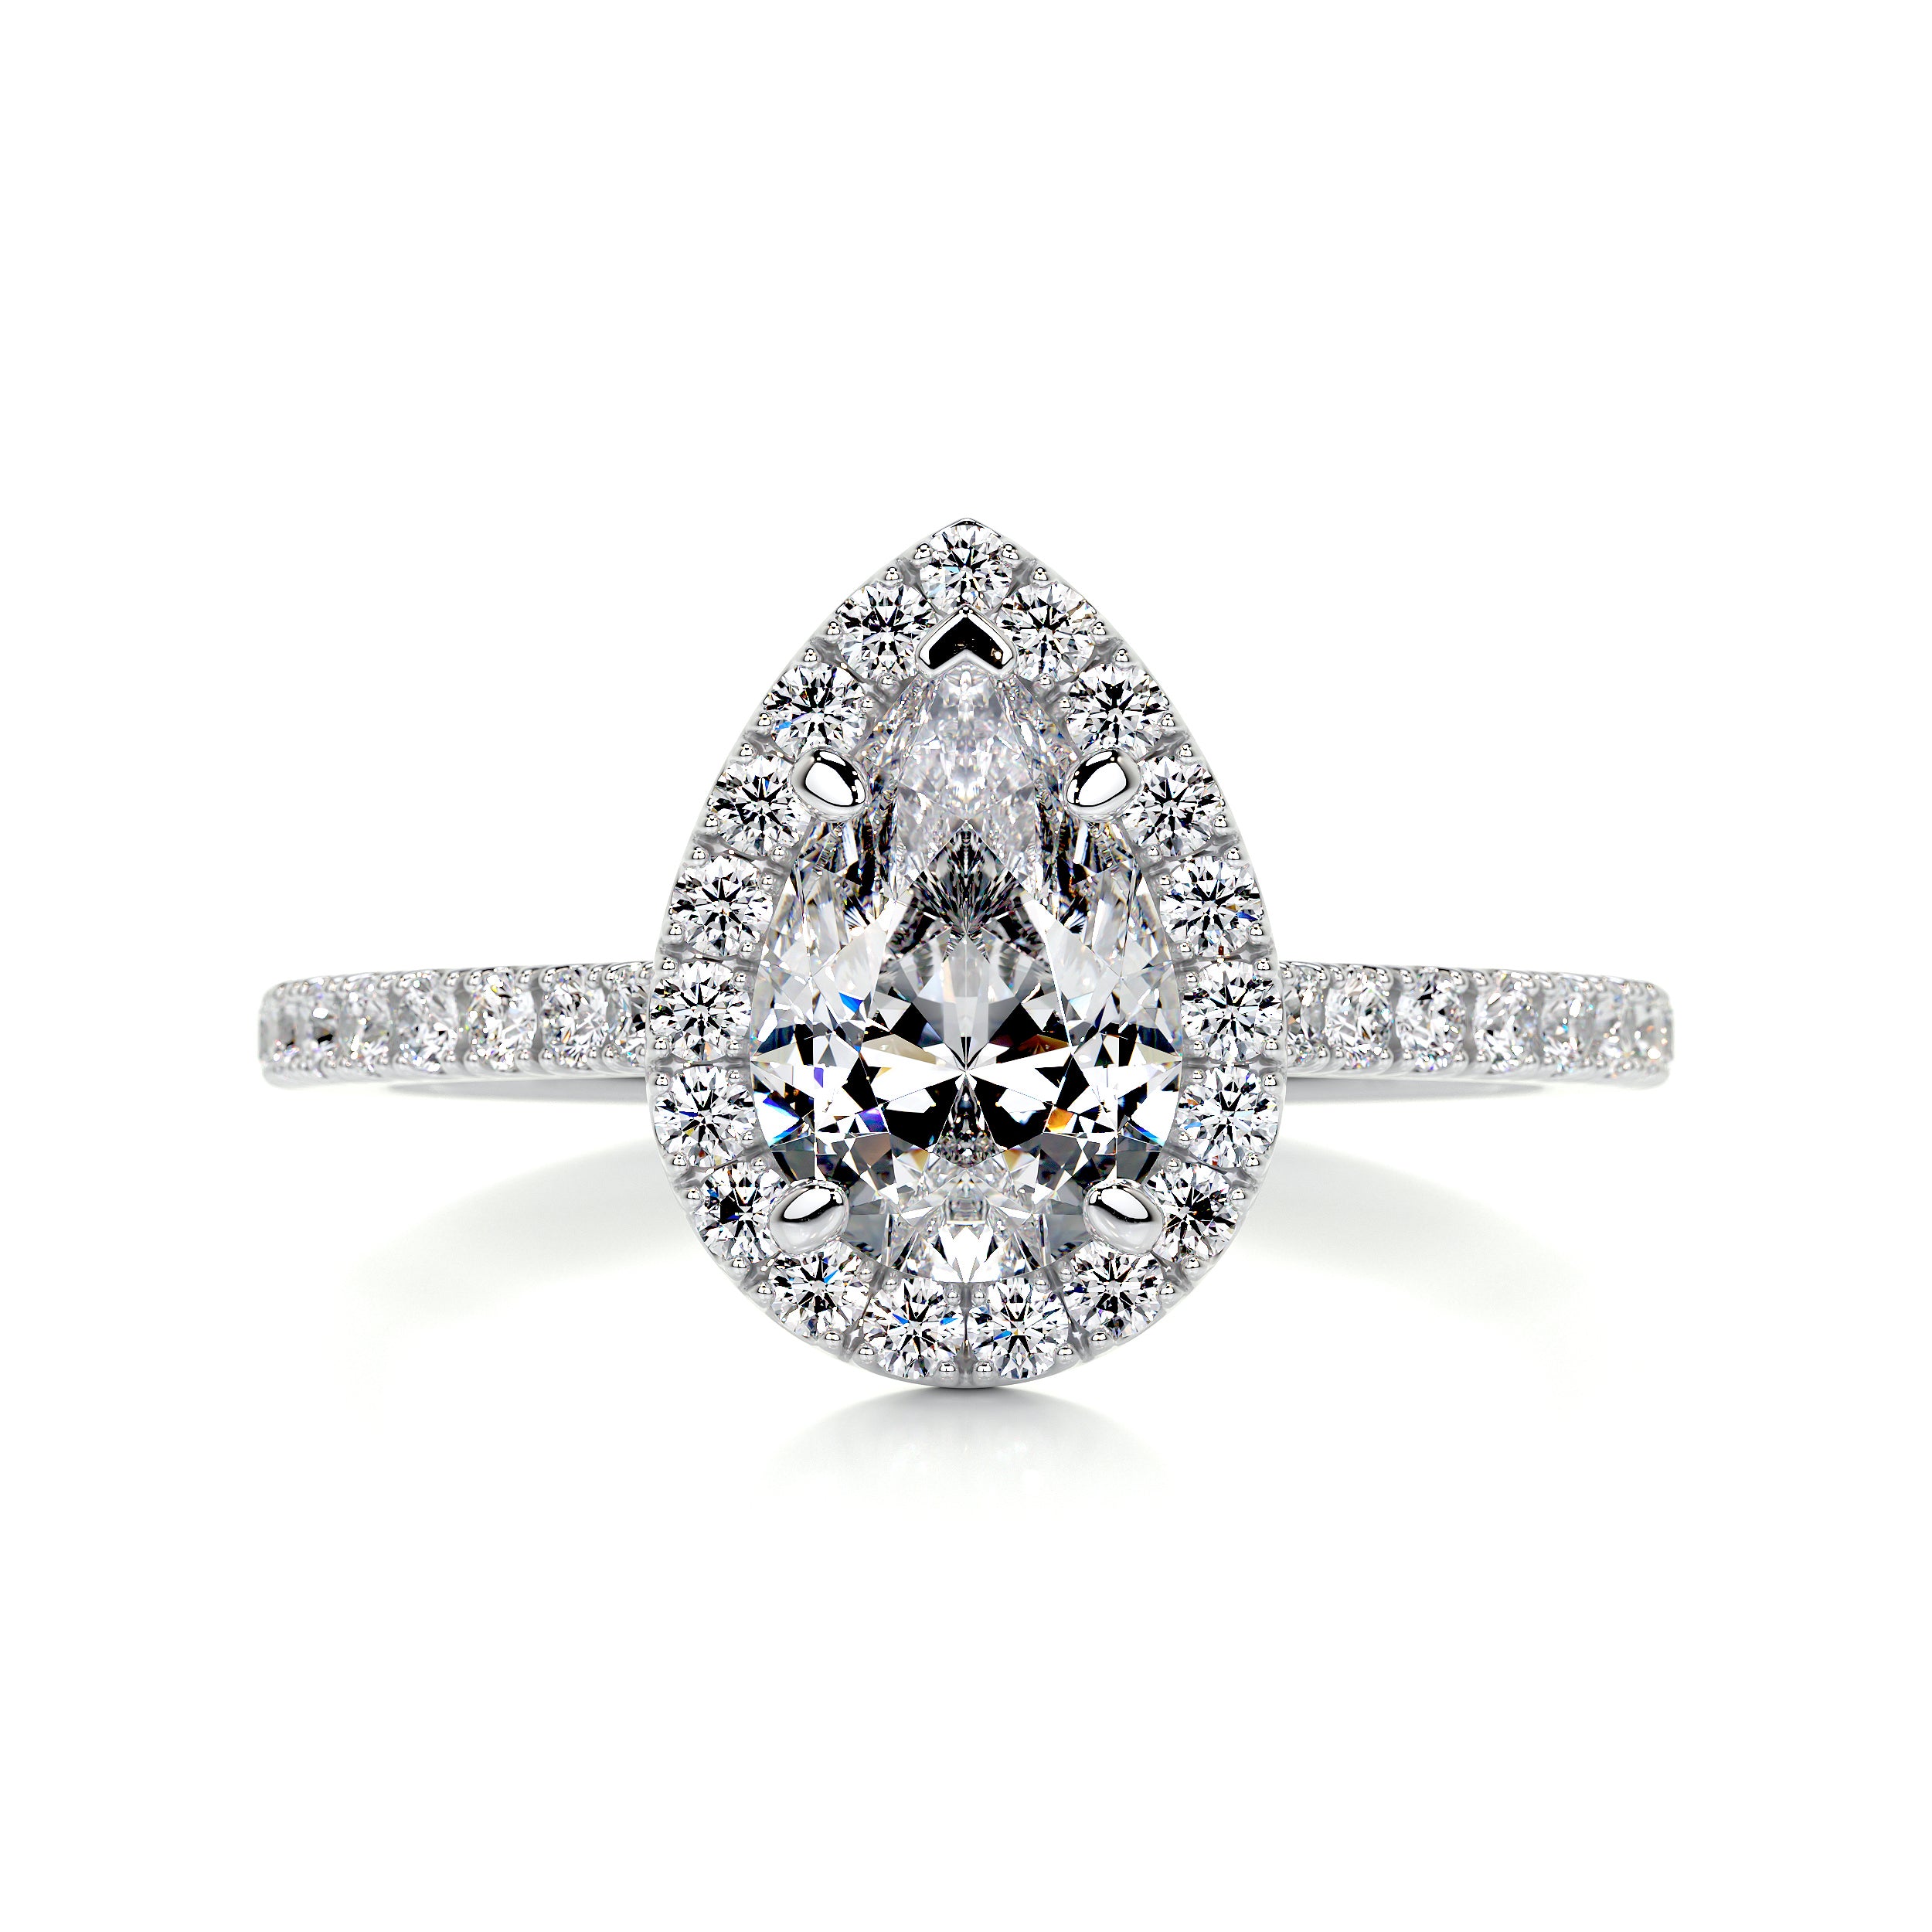 Sophia Diamond Engagement Ring   (1.50 Carat) -Platinum